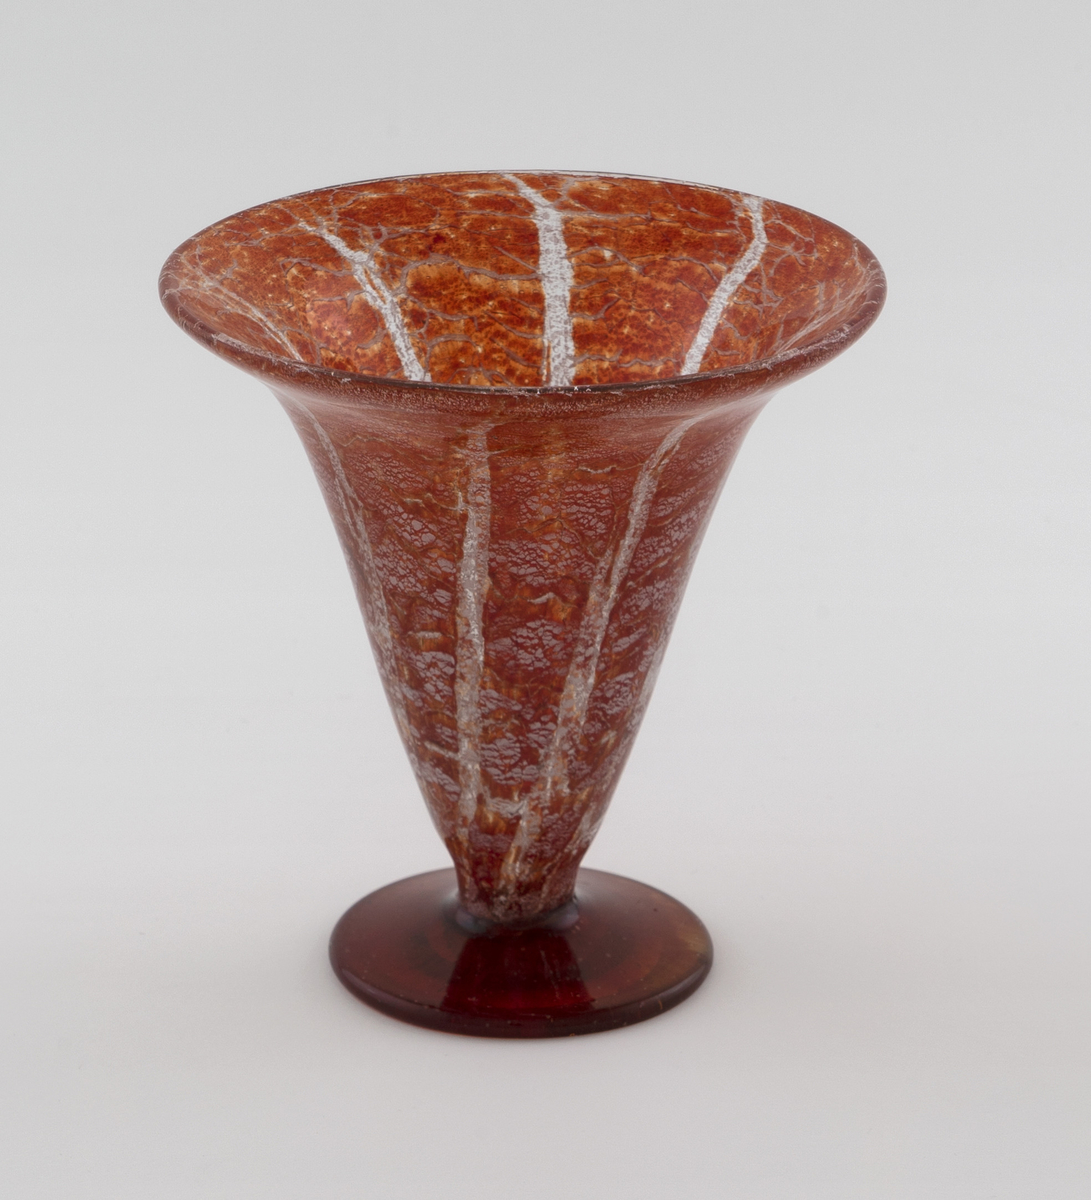 Konisk vase i Ikorakrystall som hviler på en sirkulær fot. Korpus har en marmoreringslignede overflate, hvor melkehvite og klare partier bryter opp den rødfargede bunnen.